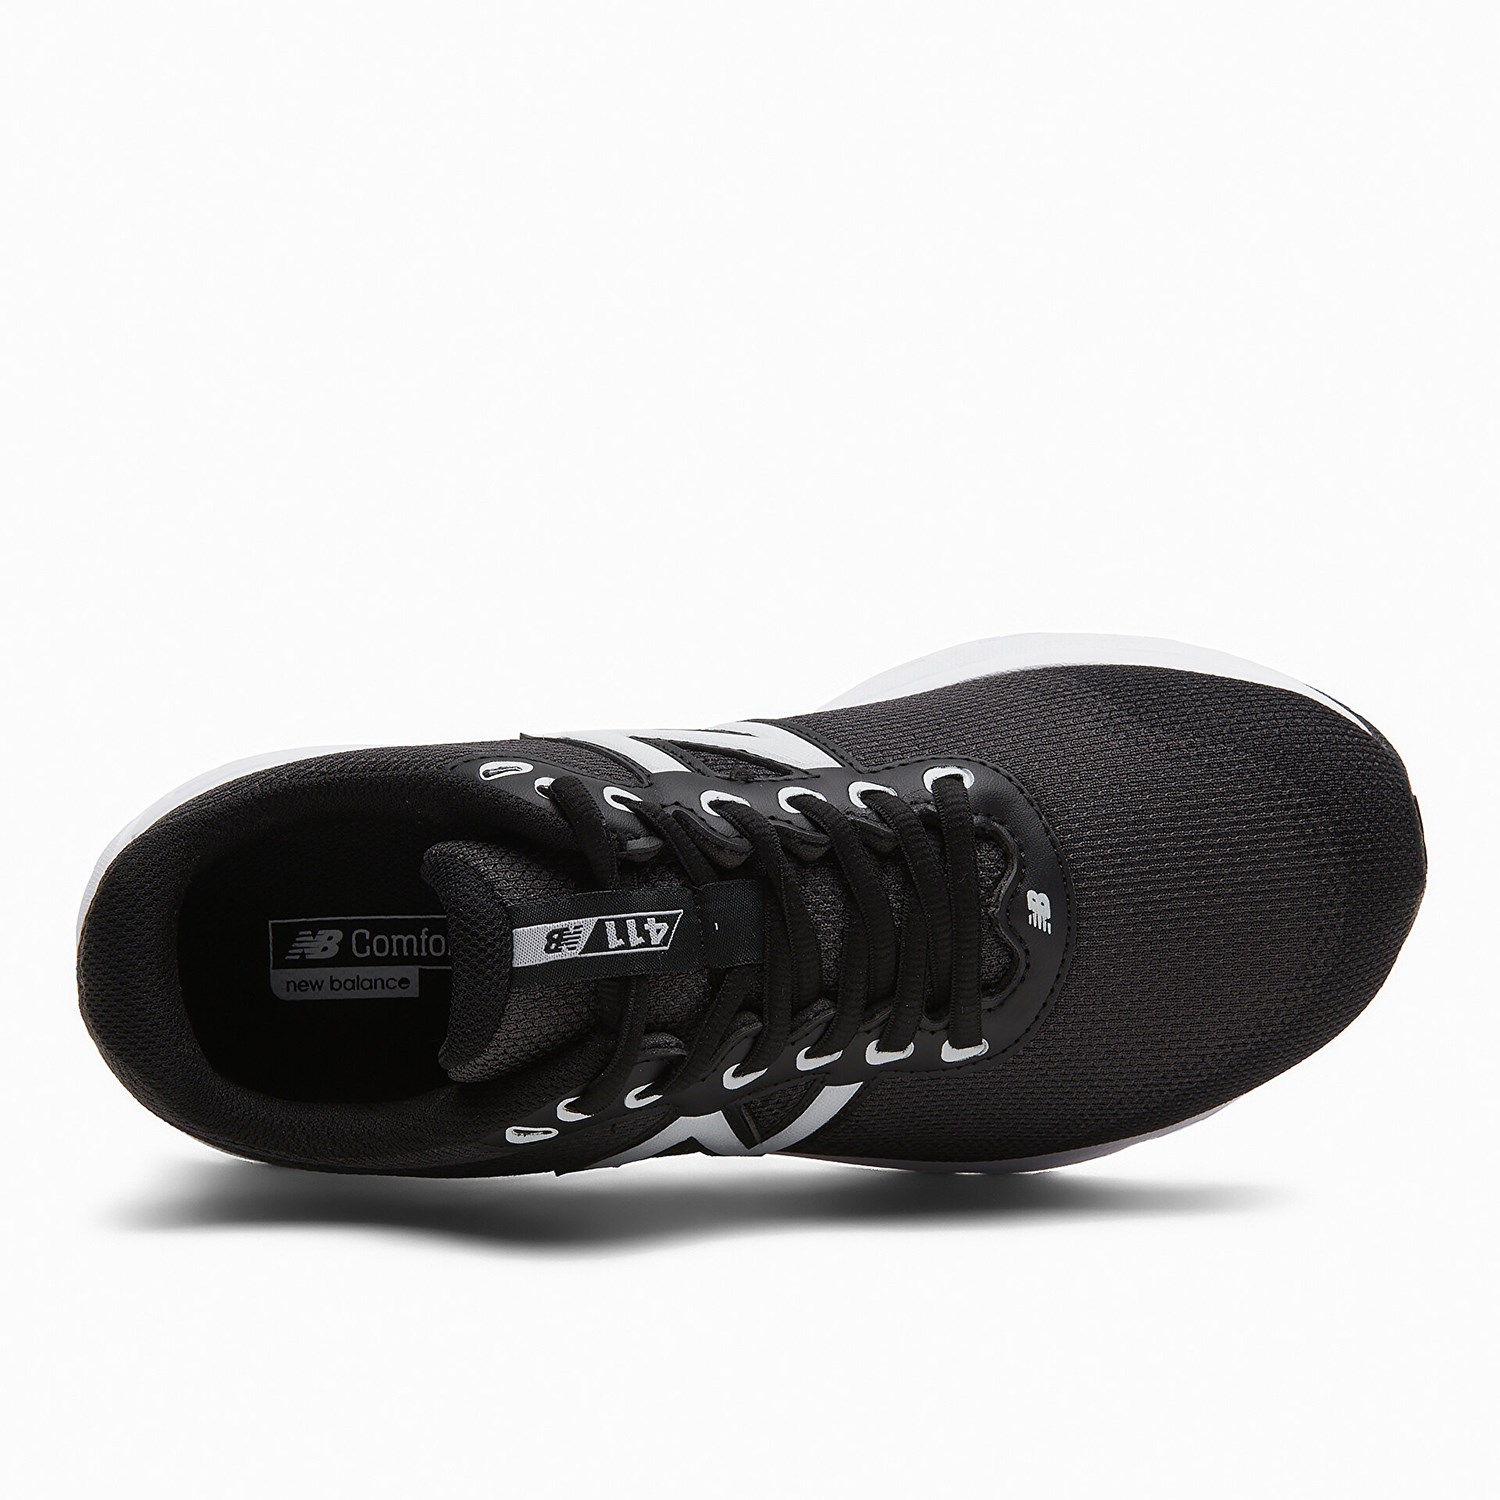 New Balance 411 Kadın Koşu Ayakkabısı Siyah